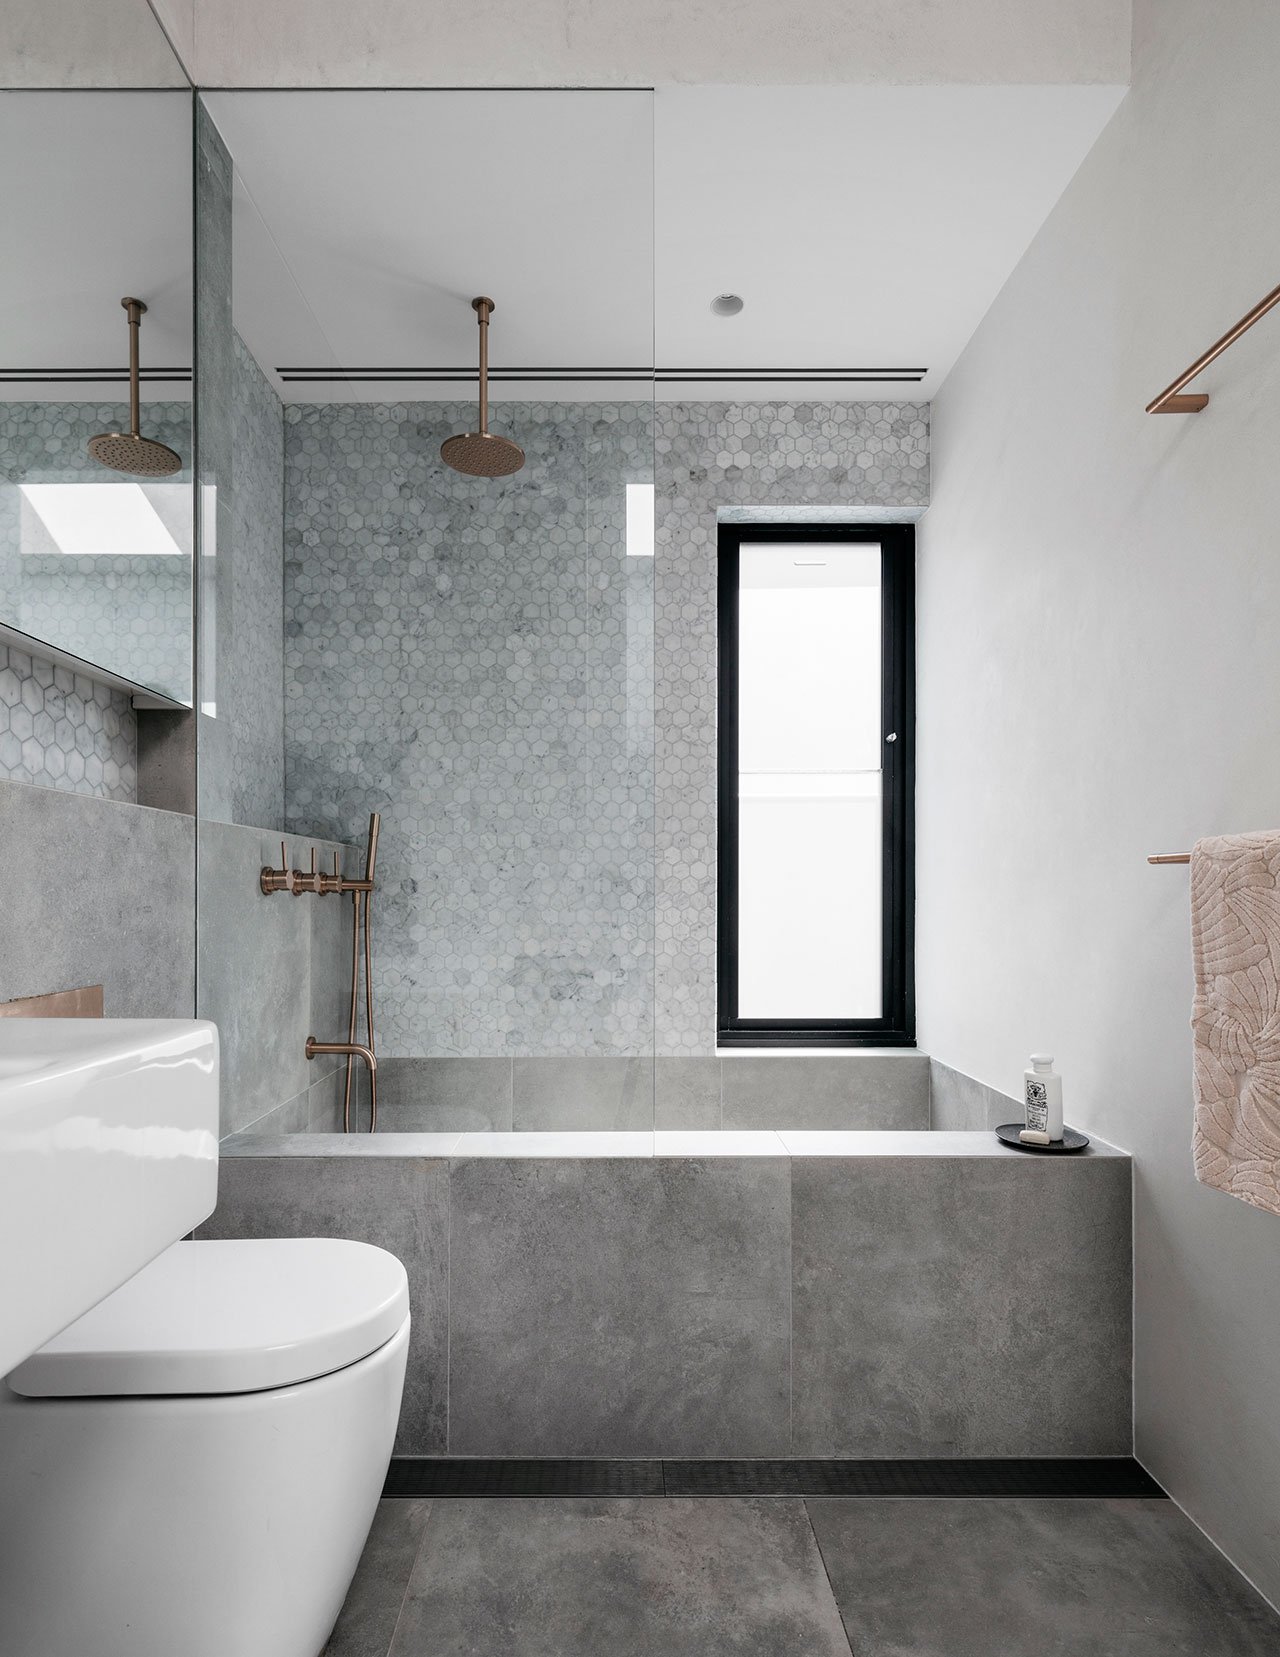 Verbazingwekkend Deze mooie kleine badkamer is ontworpen met oog voor detail | HOMEASE JQ-32